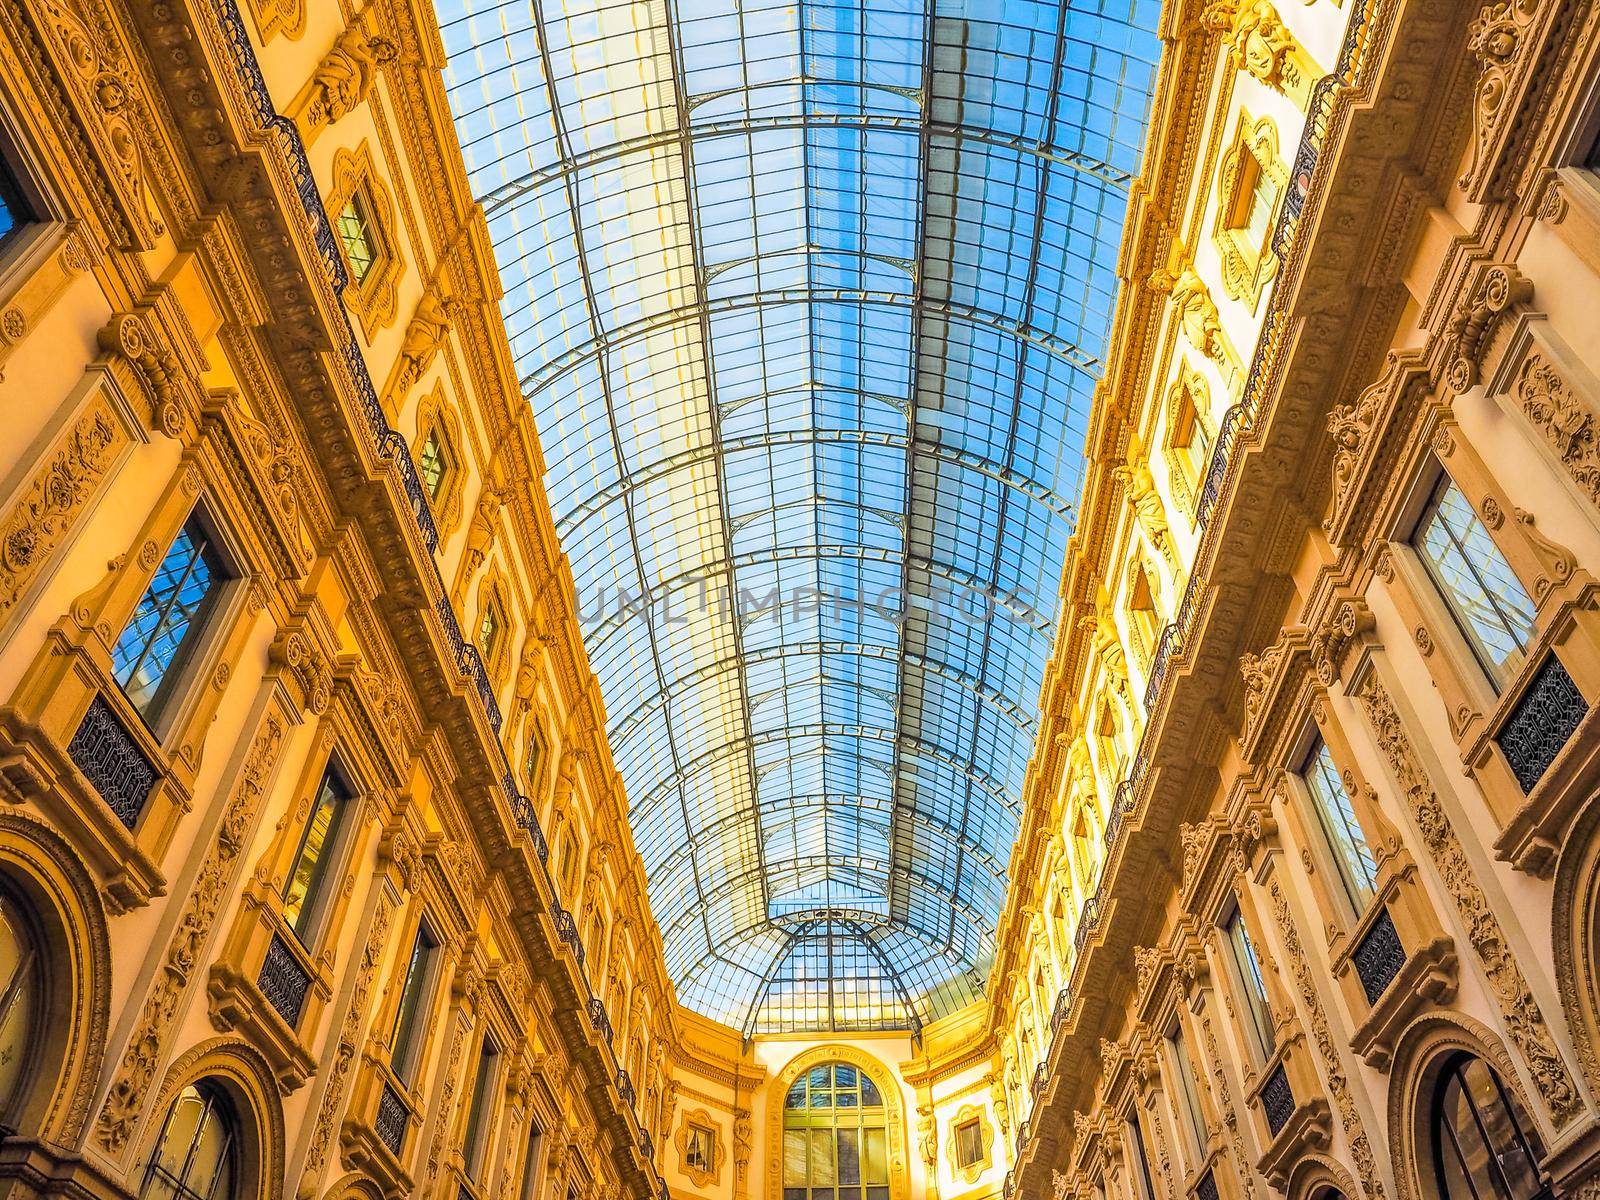 HDR Galleria Vittorio Emanuele II in Milan by claudiodivizia